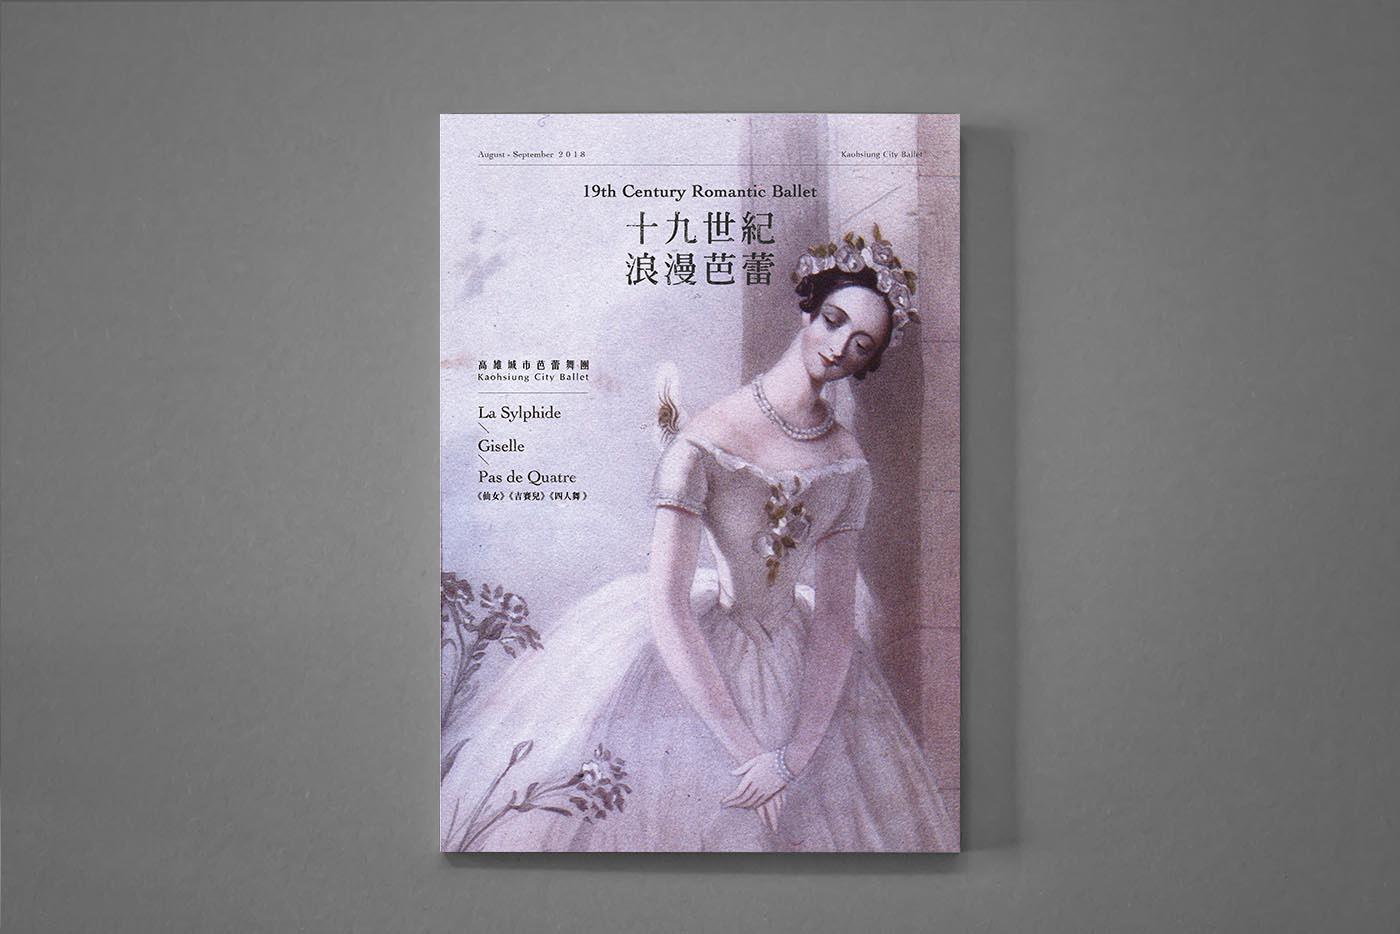 舞蹈表演文宣 活動視覺設計 平面設計 海報設計 表演藝術 芭蕾 林誼璇 高雄城市芭蕾舞團 graphic design  Yi-Syuan Lin